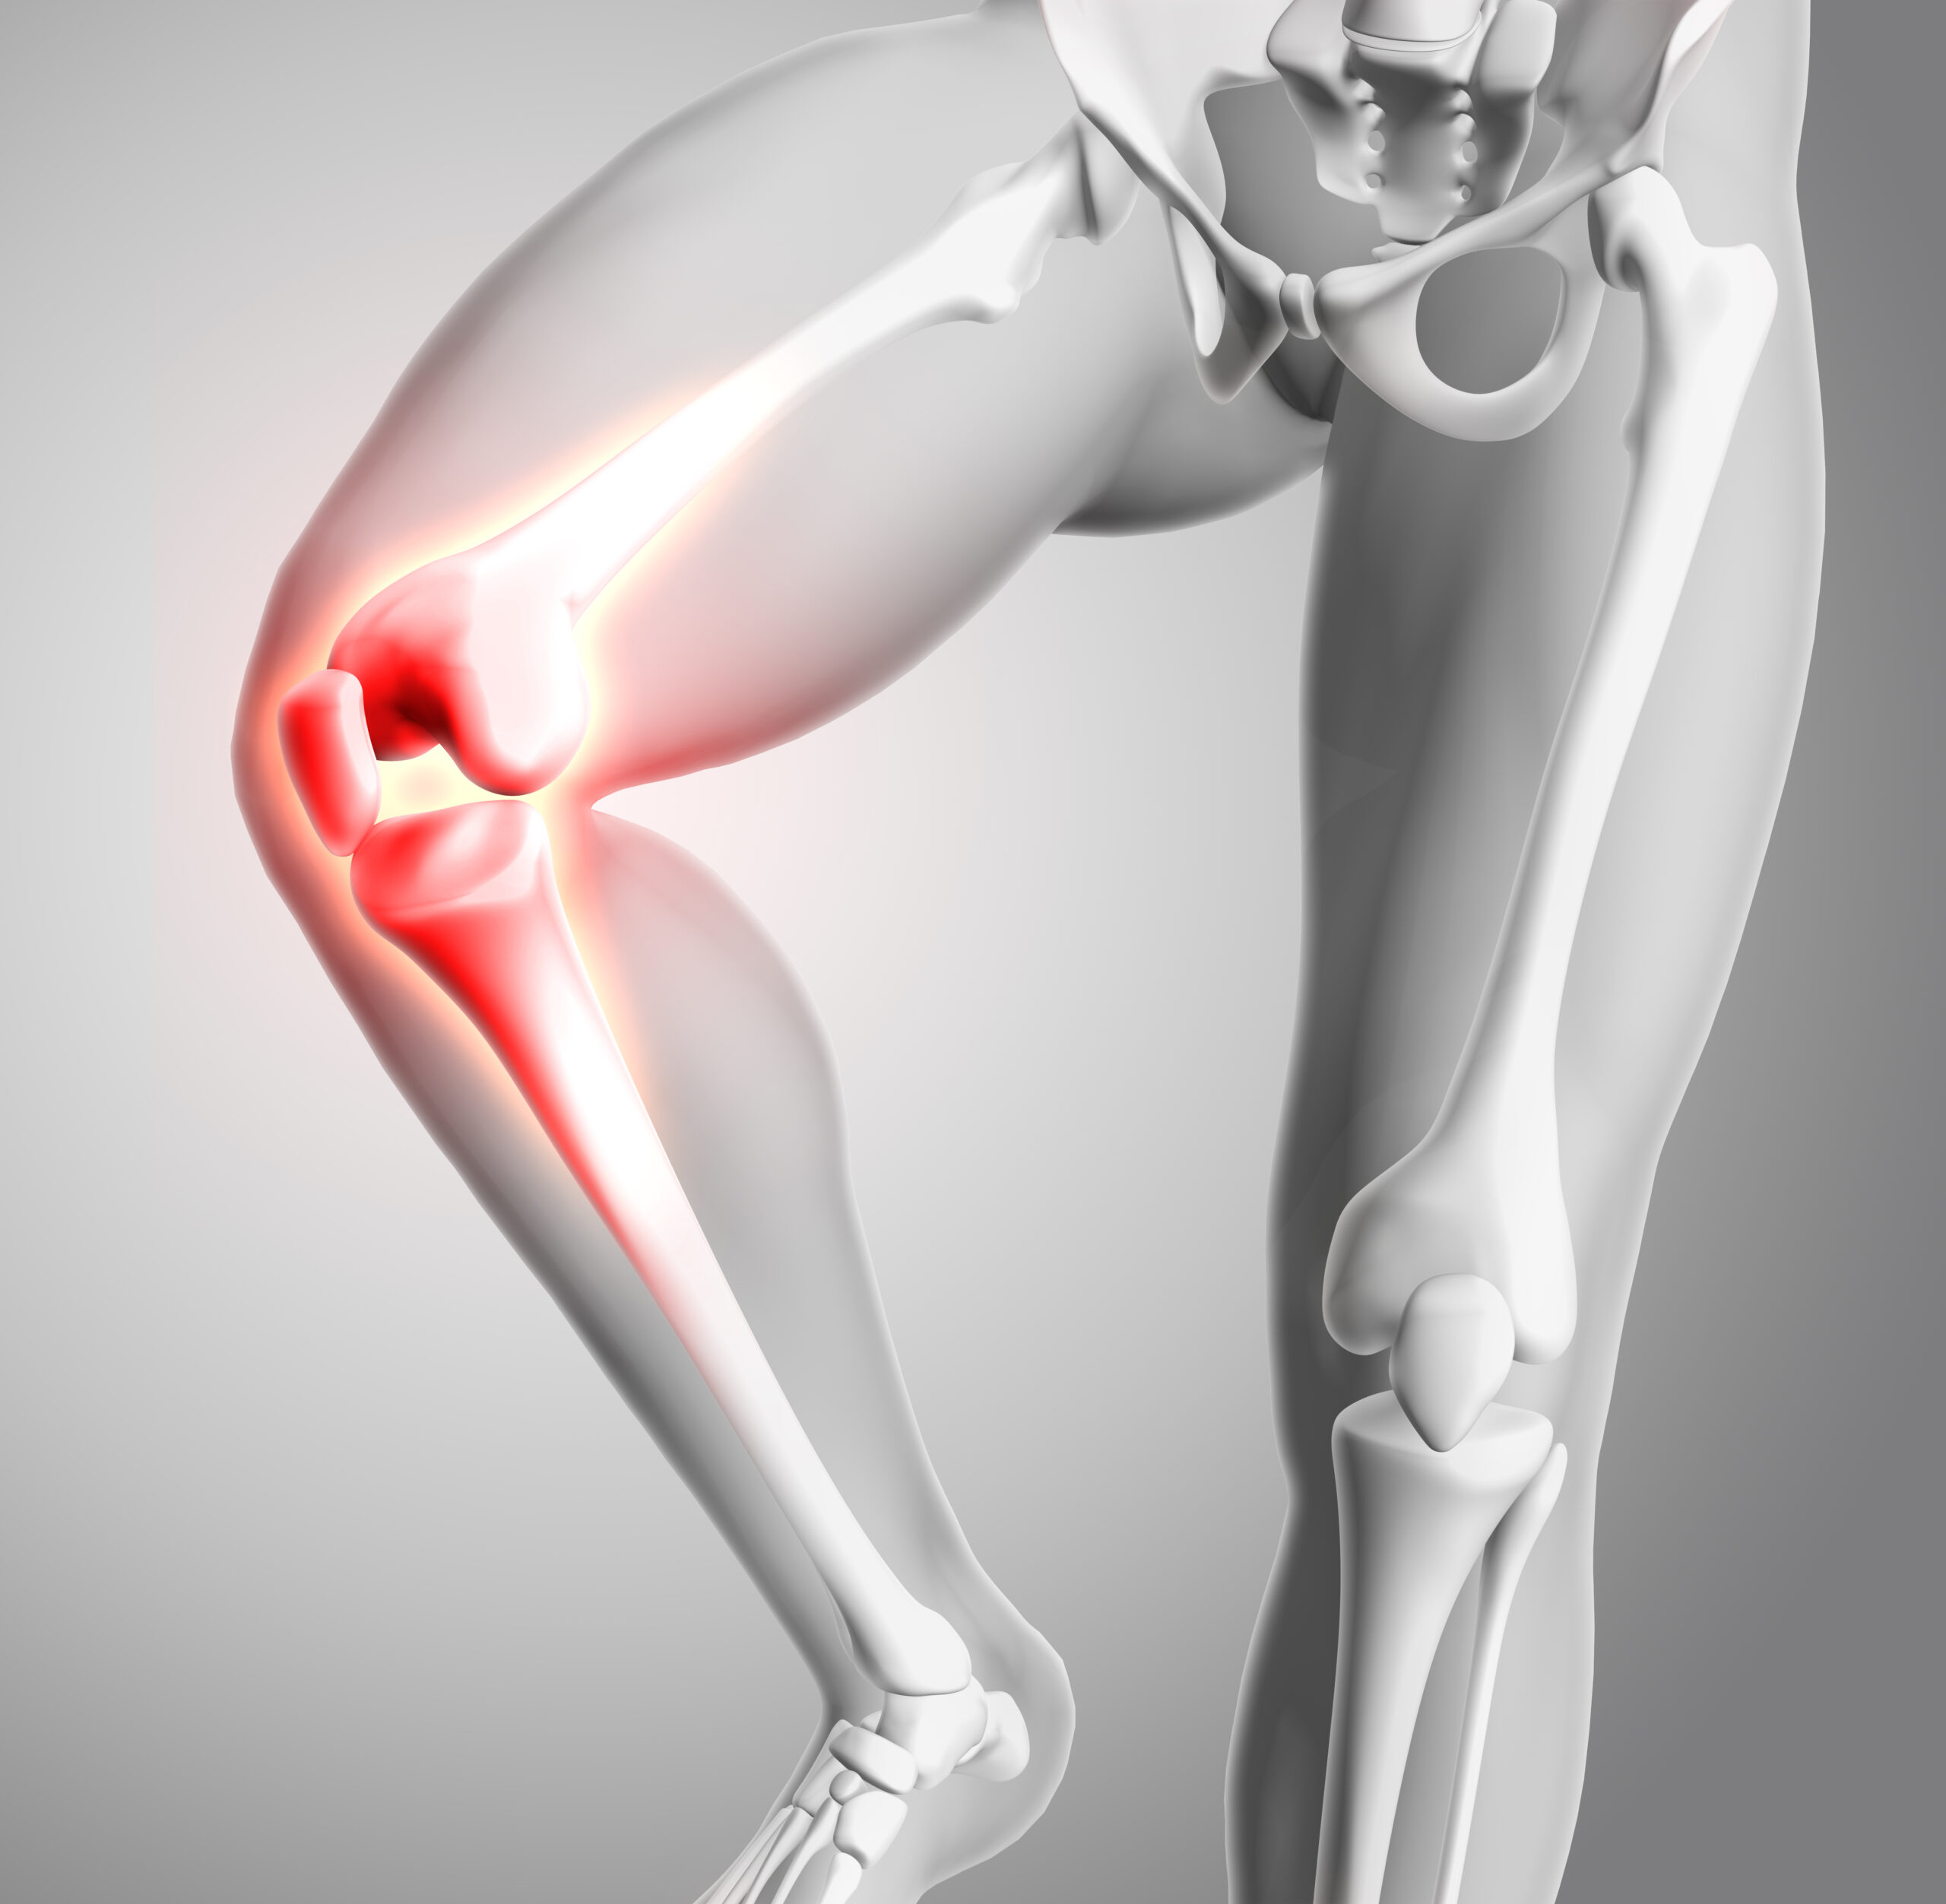 Artrosis de rodilla: tratamiento en fisioterapia - Fisioterapia Sevilla